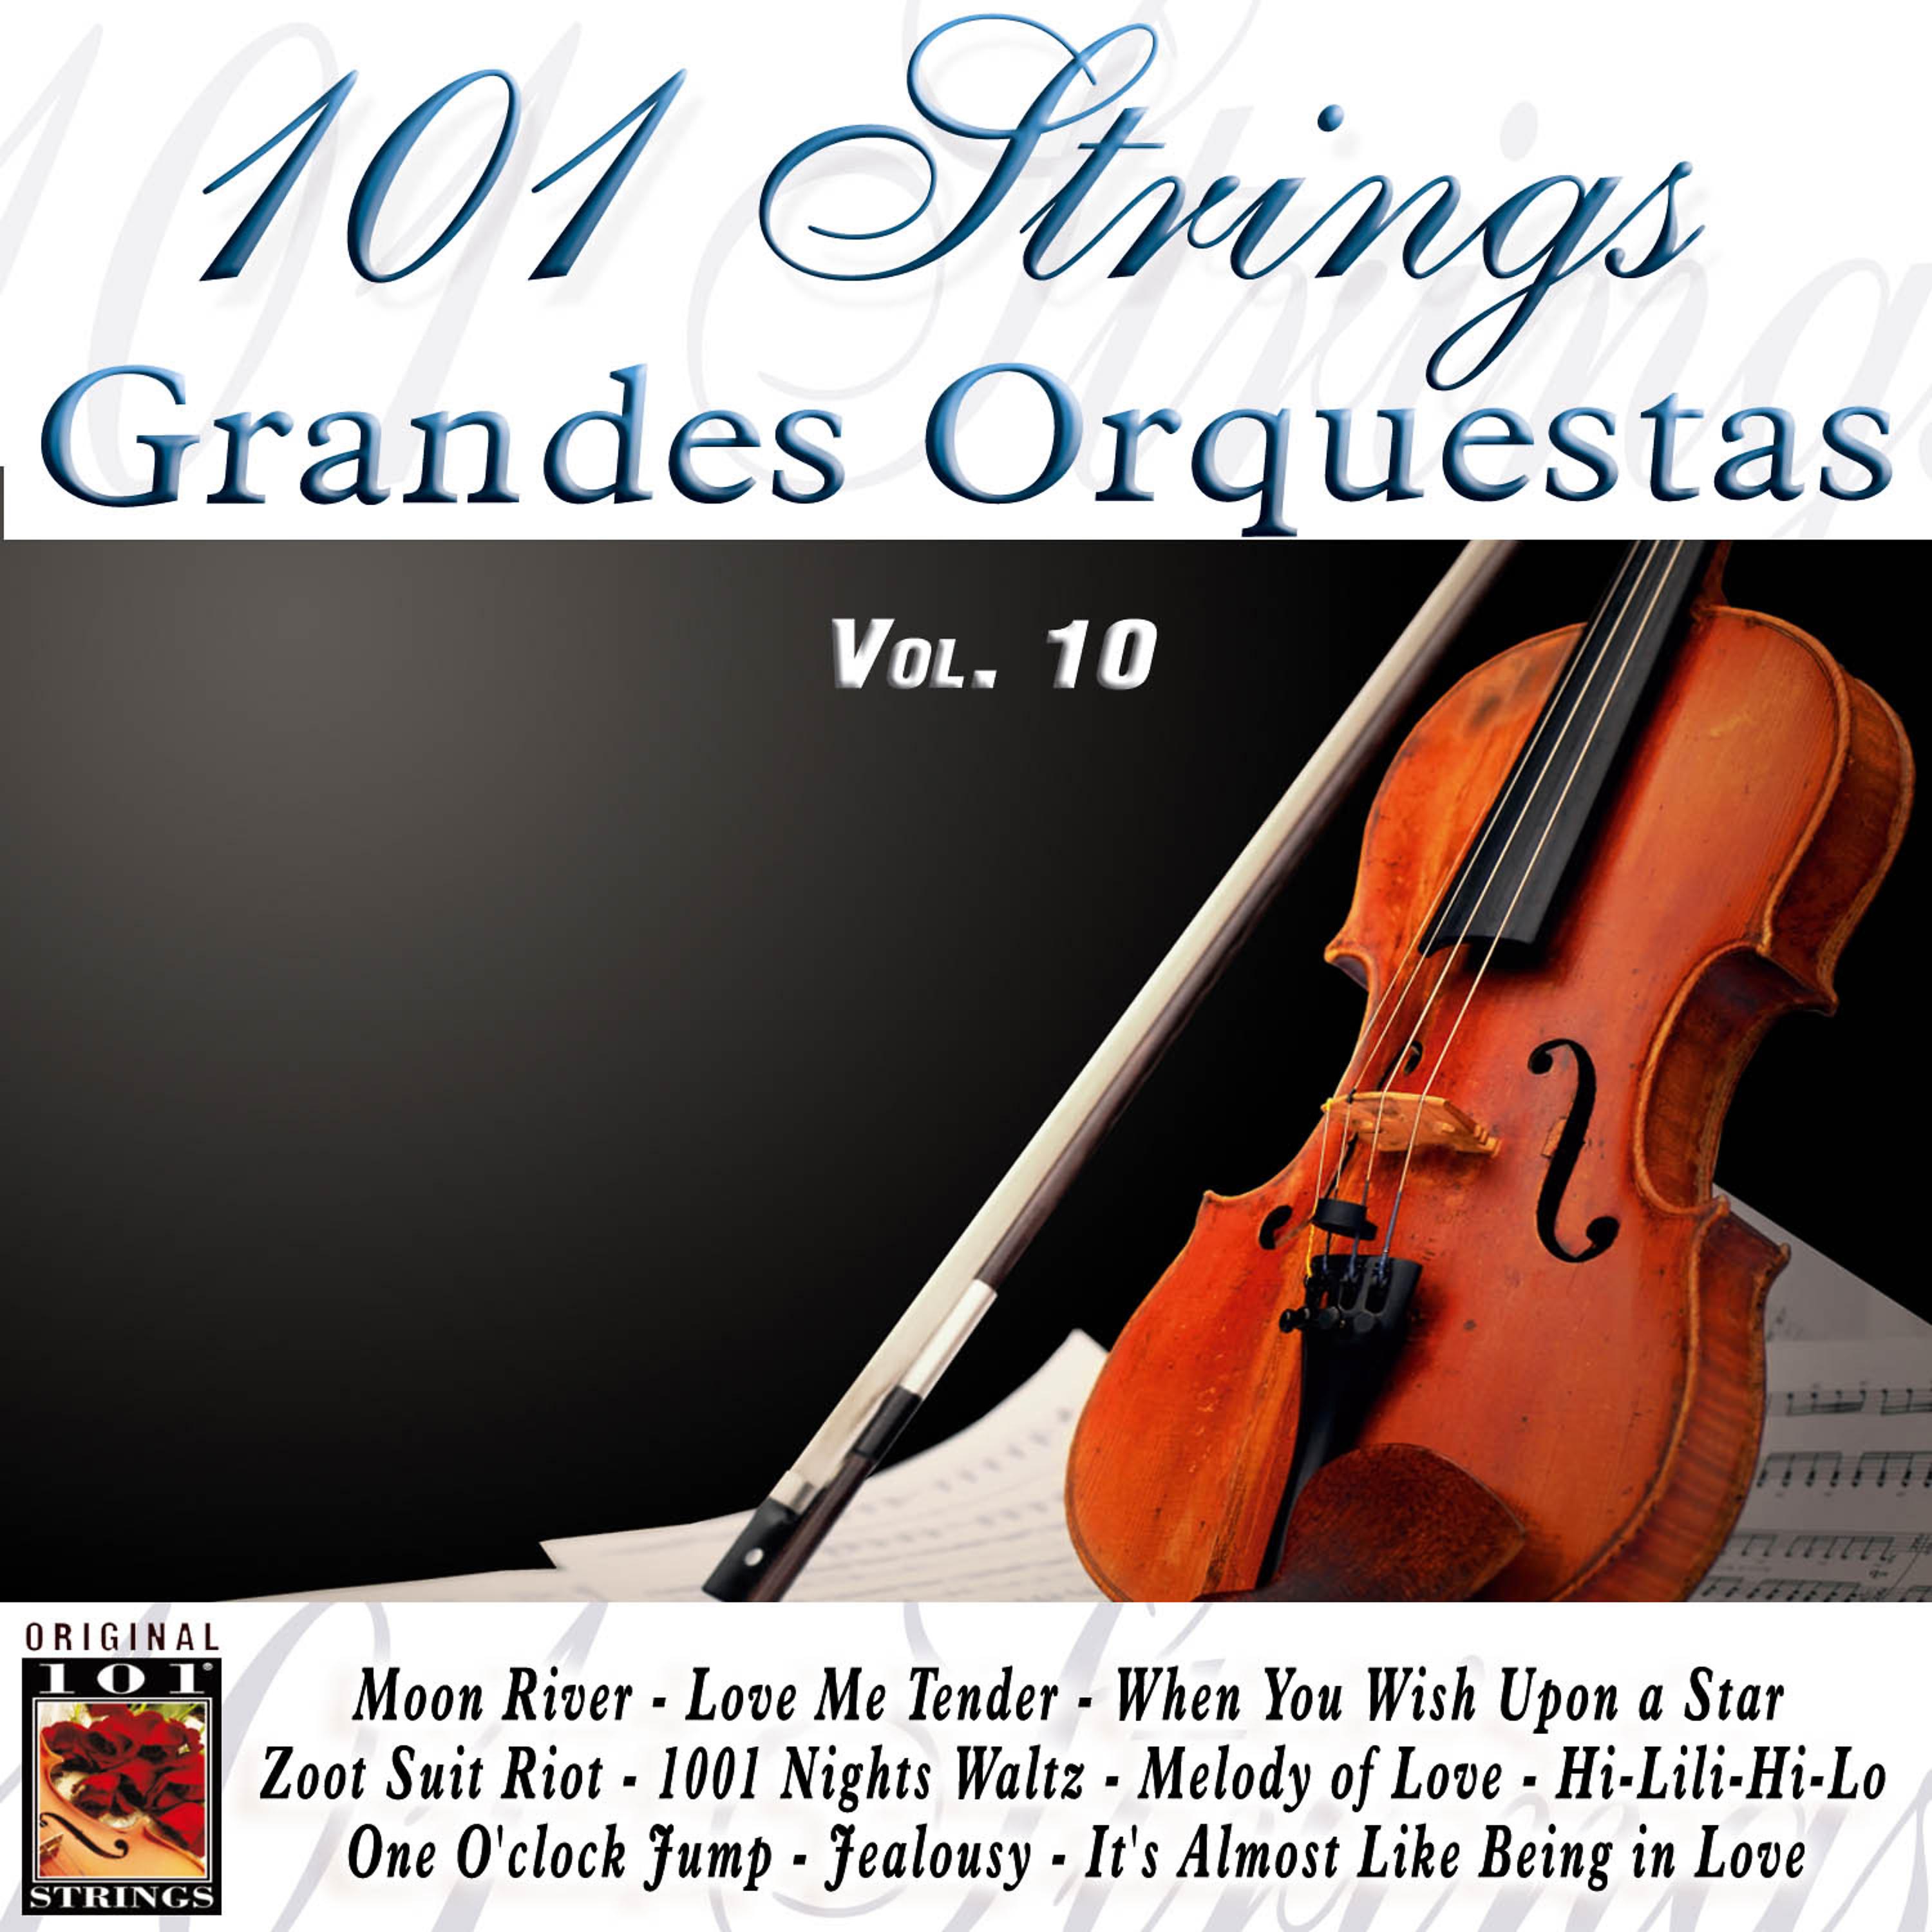 Постер альбома 101 Strings Grandes Orquestas Vol. 10